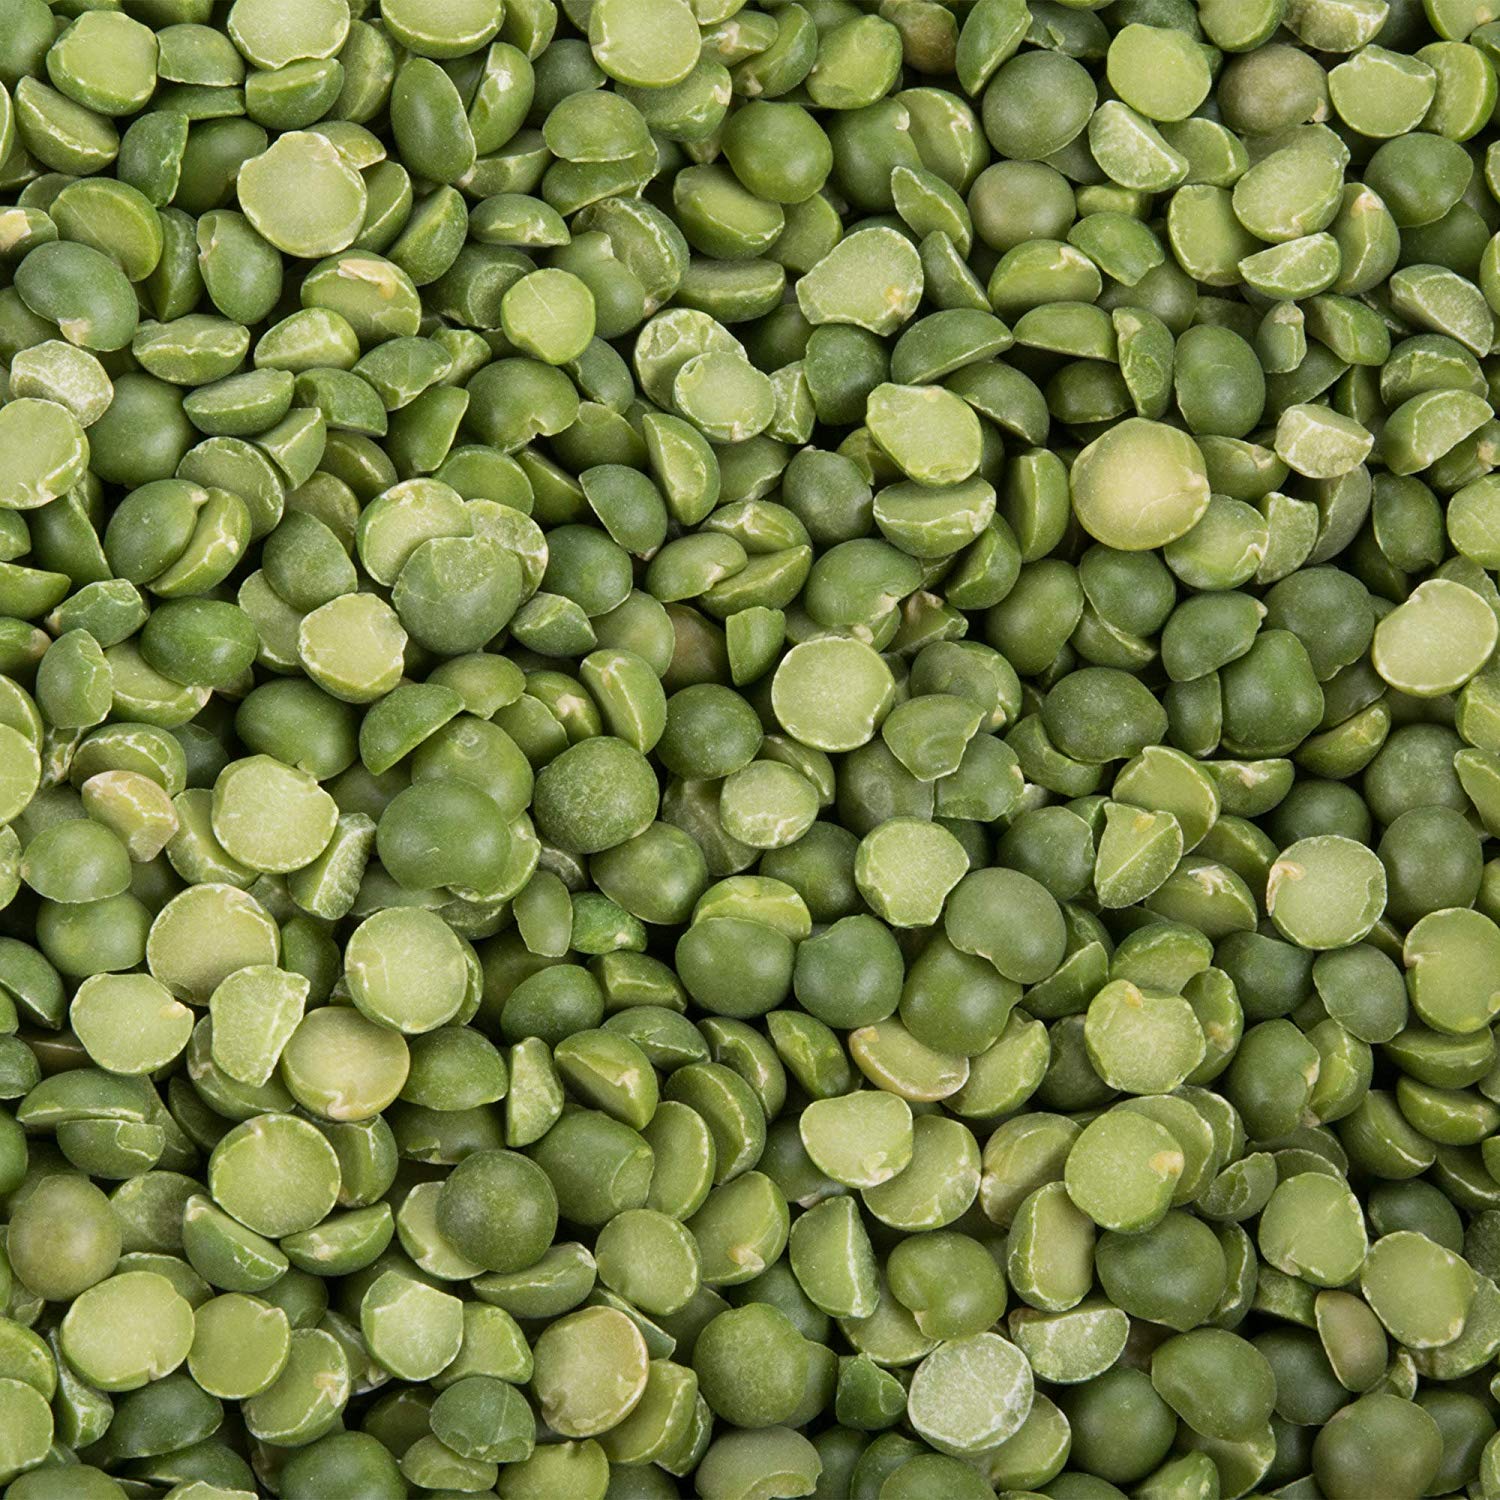 Green Split Peas Certified Organic - Non-GMO 5 lbs - 5 lbs - 5 lbs - 5 lbs